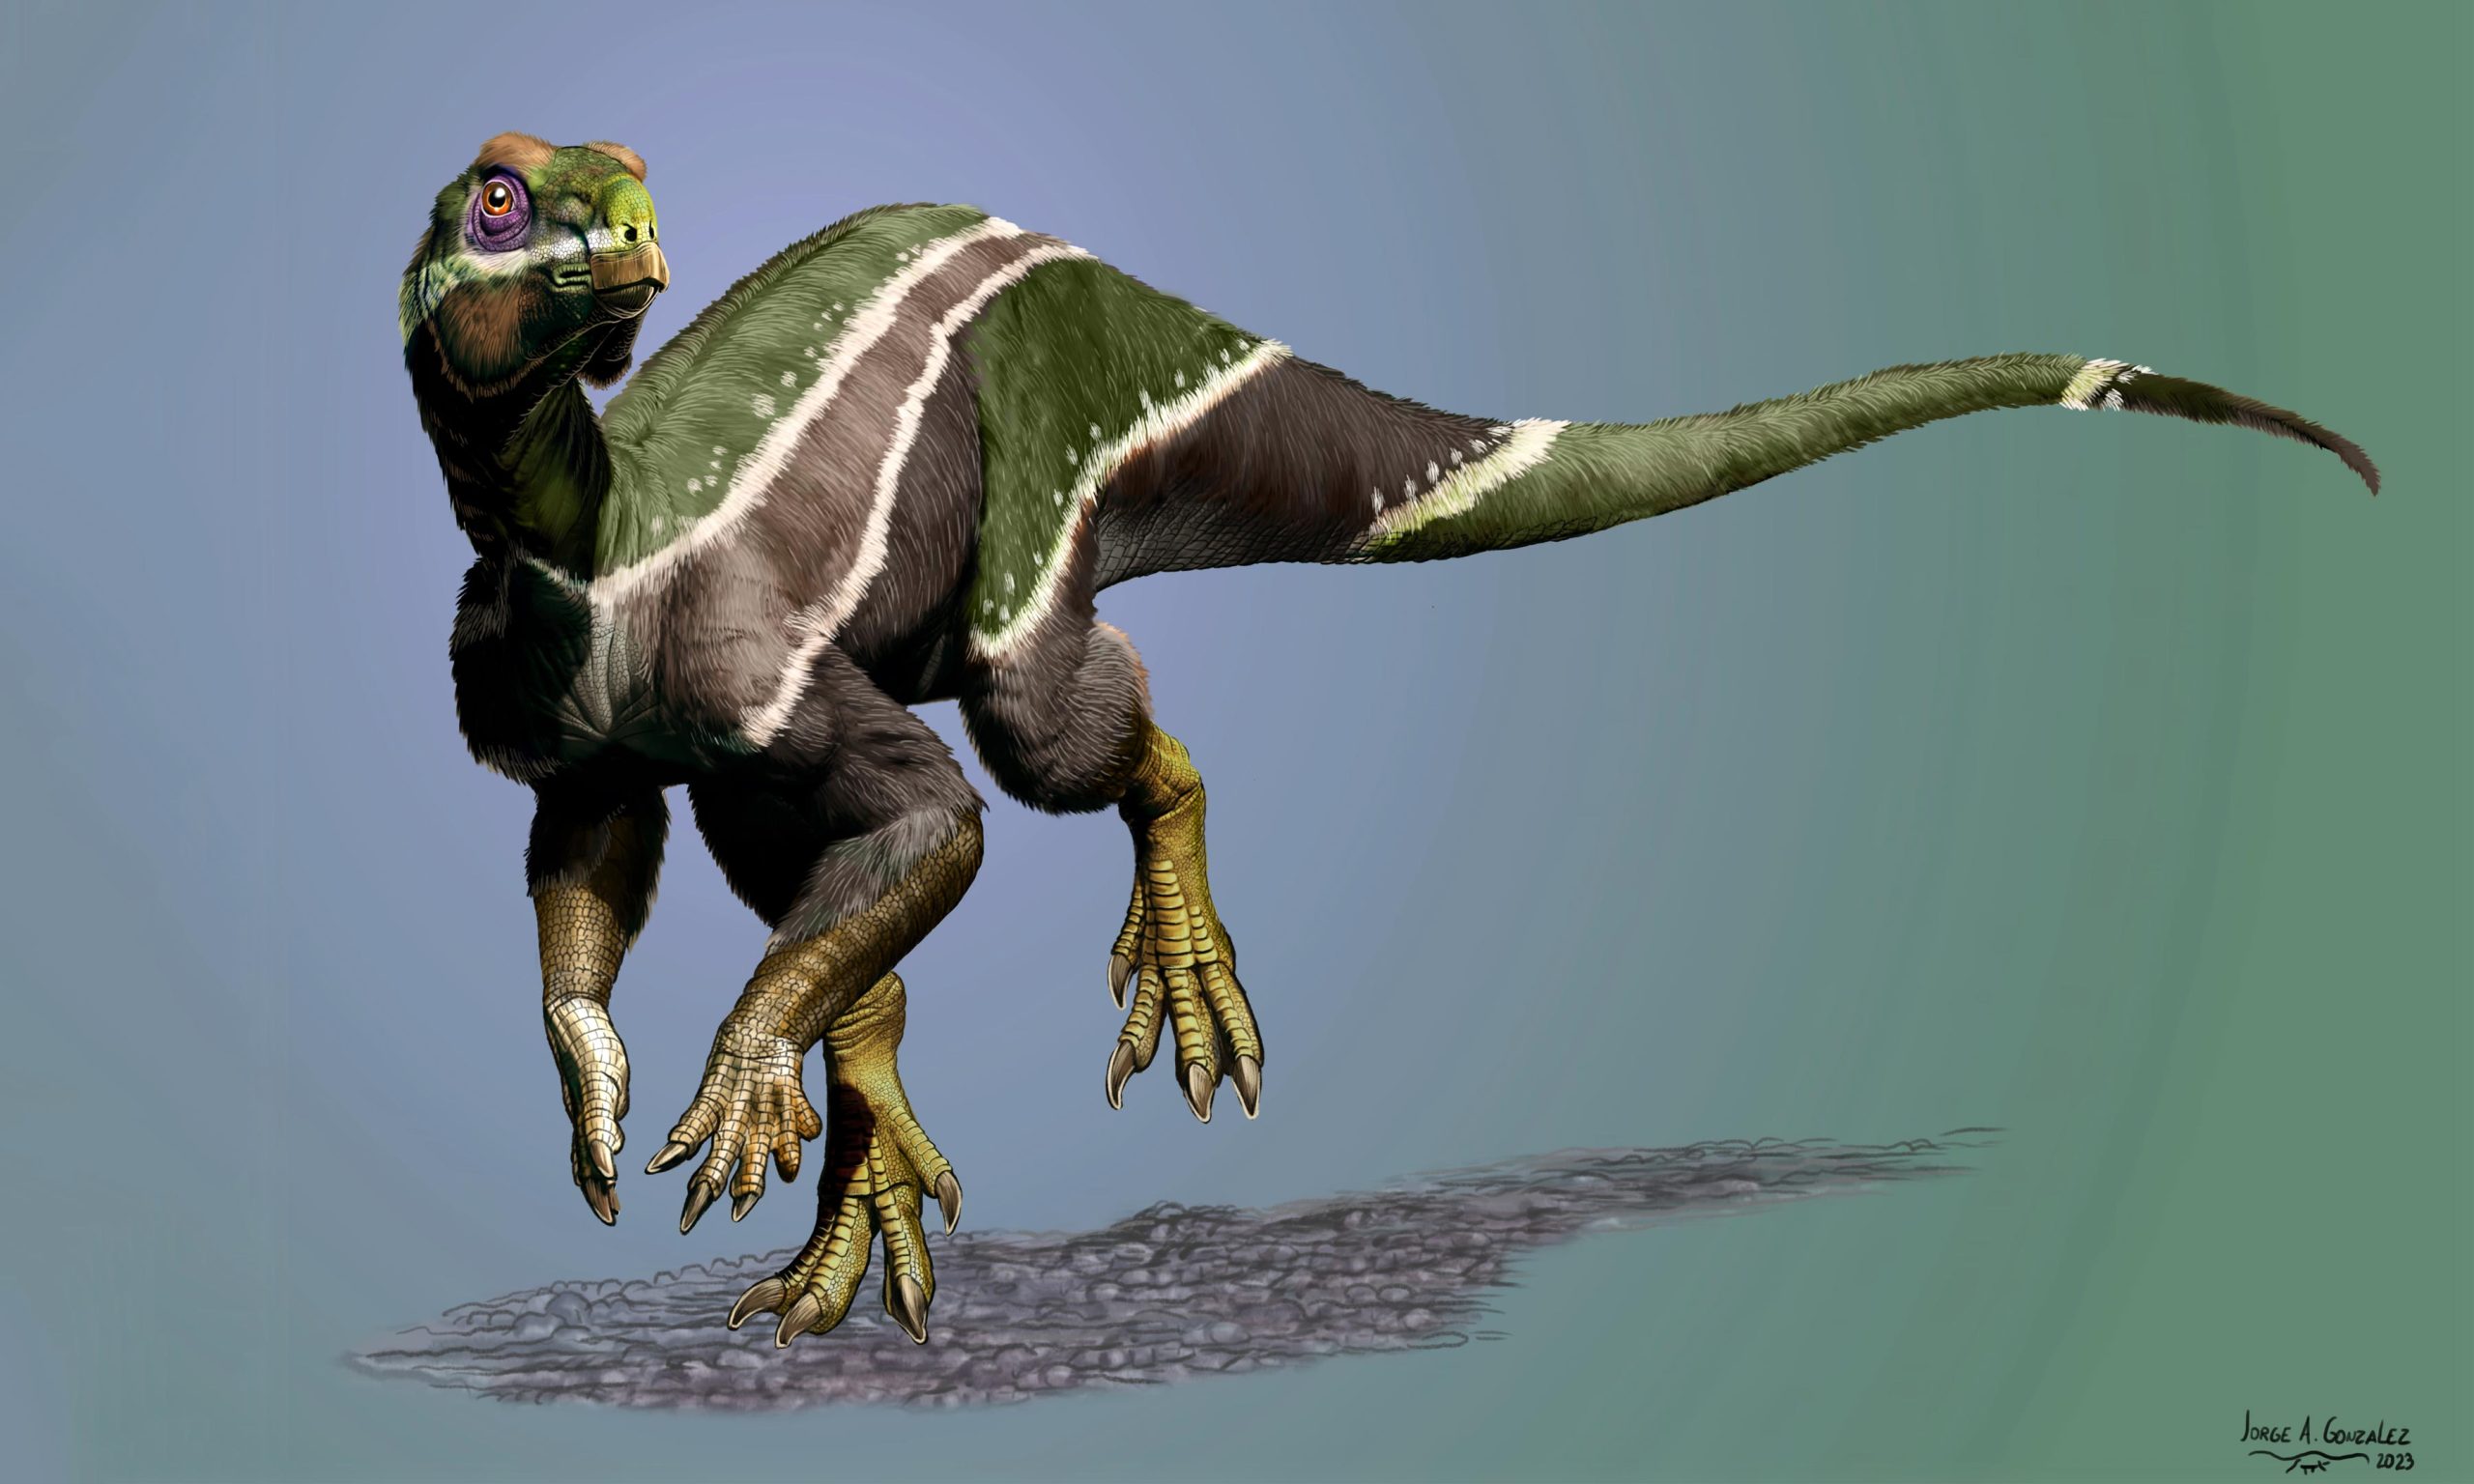 Nově objevený dinosaurus Iani může být „posledním výdechem“ tohoto druhu na měnící se planetě